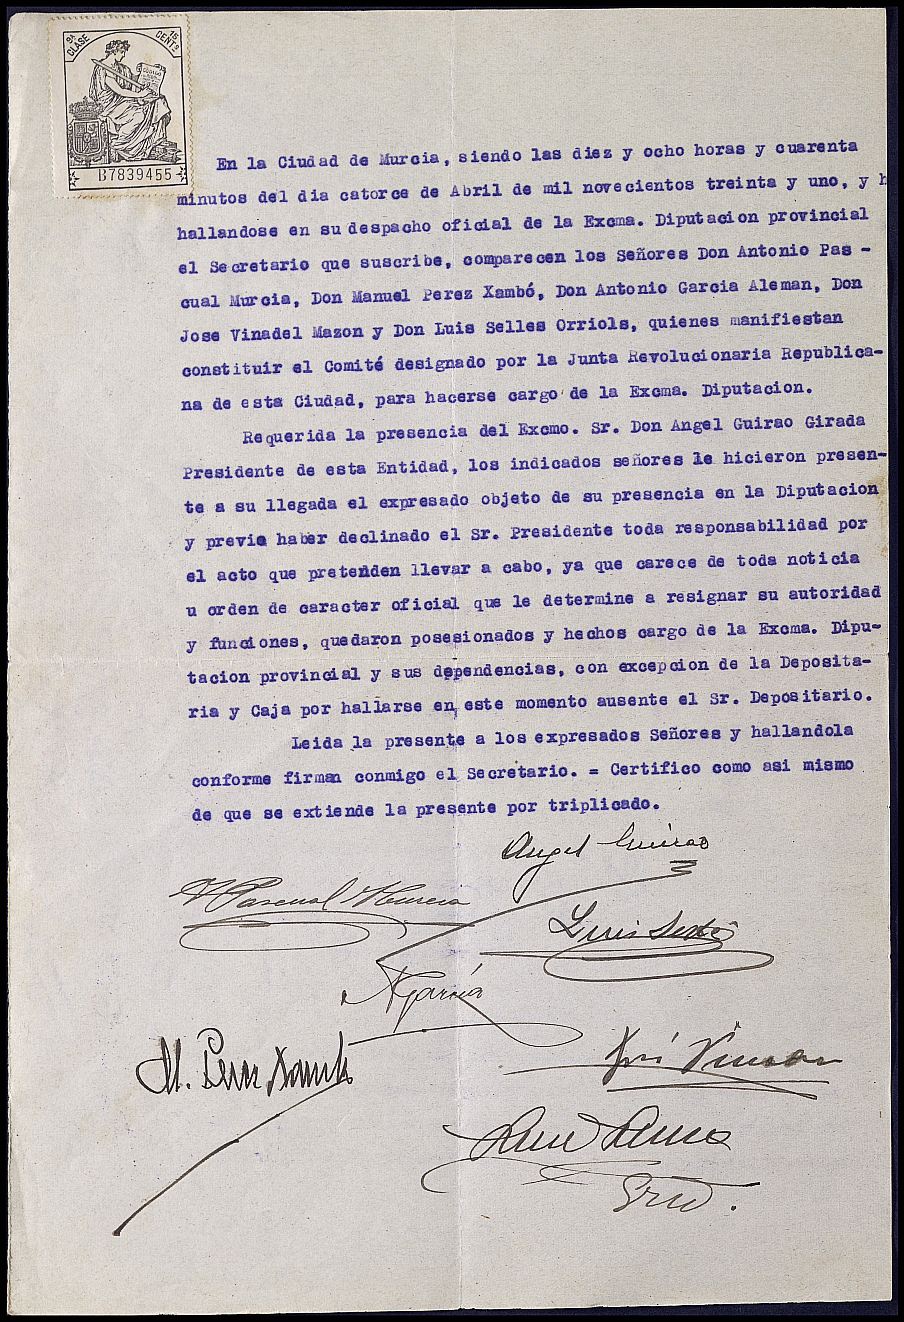 Expediente de toma de posesión de la Diputación Provincial por parte del comité designado por la Junta Revolucionaria Republicana de Murcia, tras la proclamación de la Segunda República.